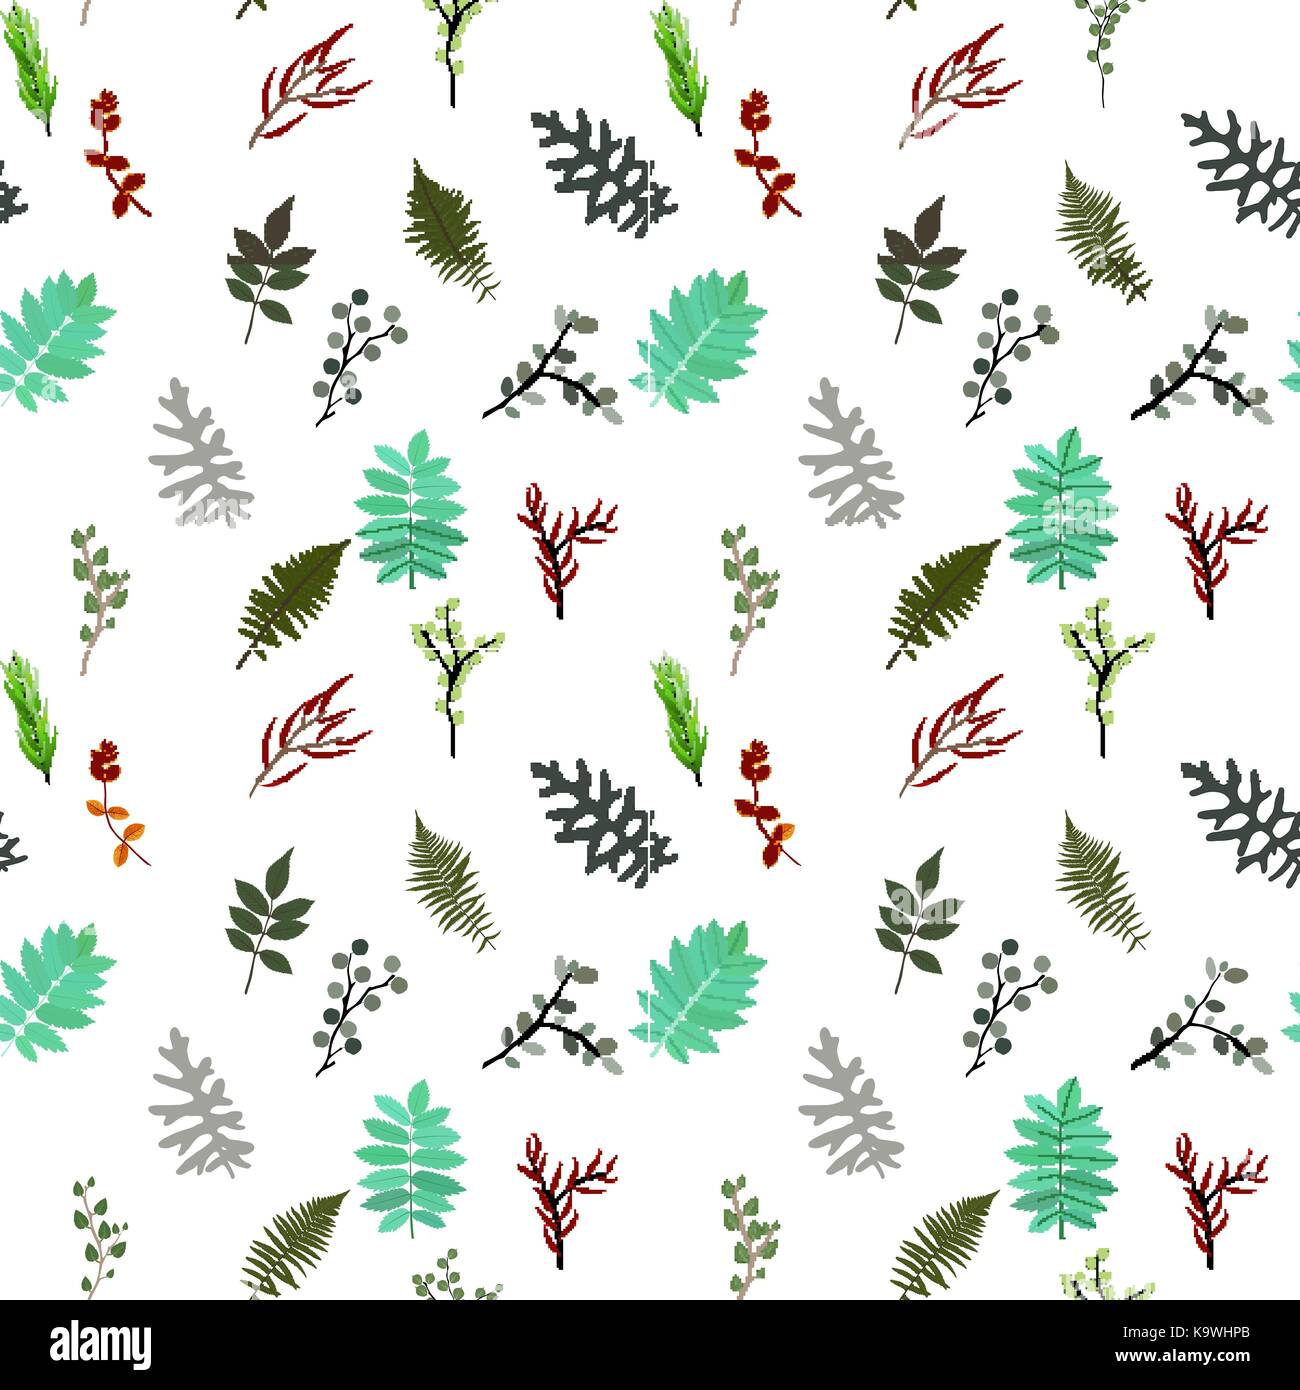 Elementi tropicali: agonis, eucalipto, annona, balata, zamiokulkas, cissus. seamless pattern. illustrazione vettoriale. Illustrazione Vettoriale